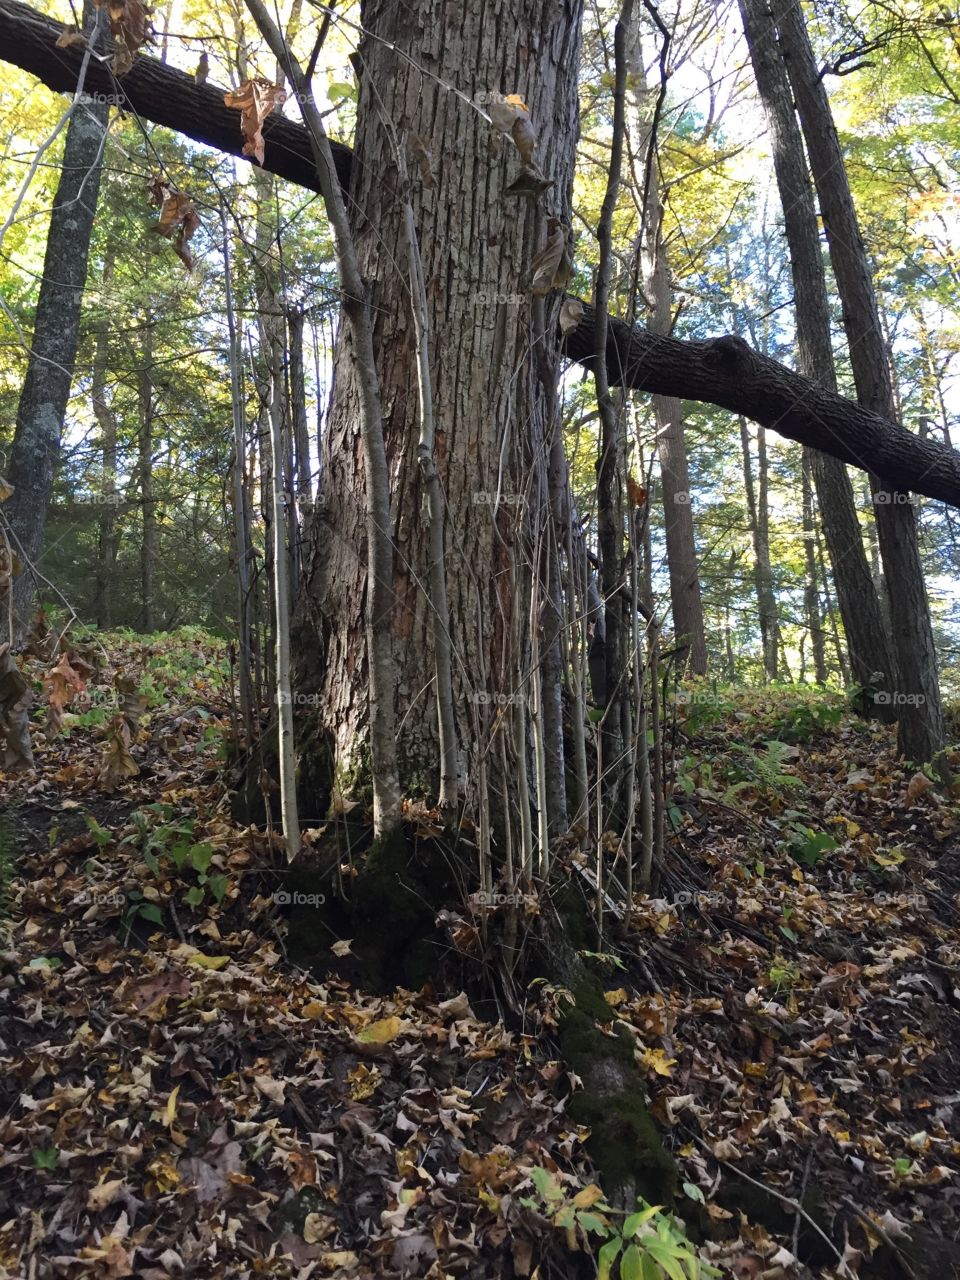 Weird tree with many stems growing upward 